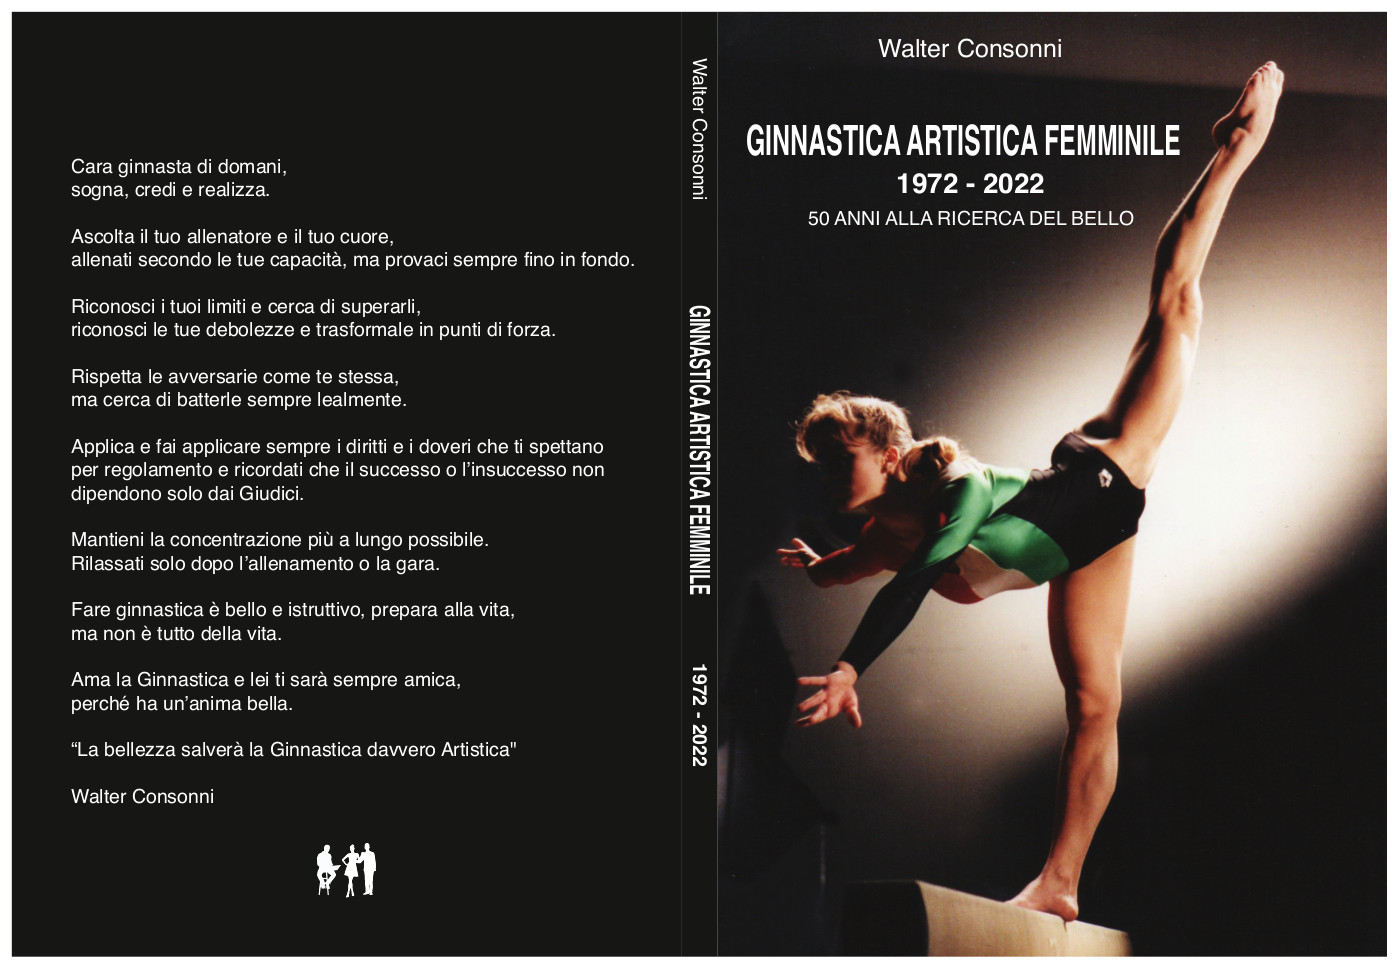 ginnastica-artistica-femminile-1972-2022-copertina